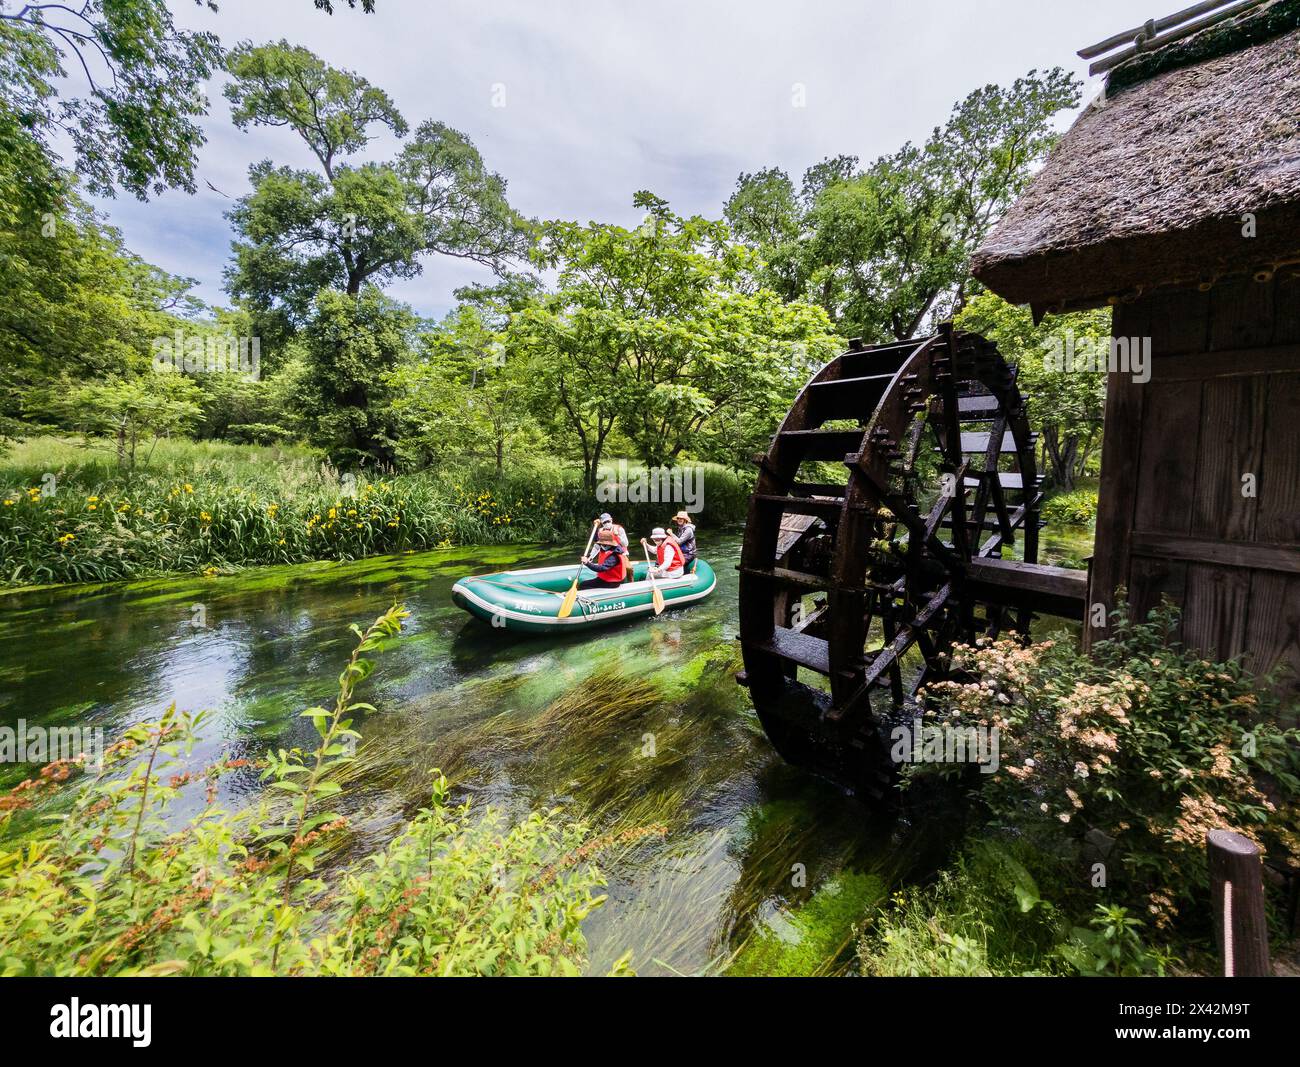 Touristes sur un petit bateau passant devant une vieille roue à eau traditionnelle sur une petite rivière à Nagano, Japon Banque D'Images